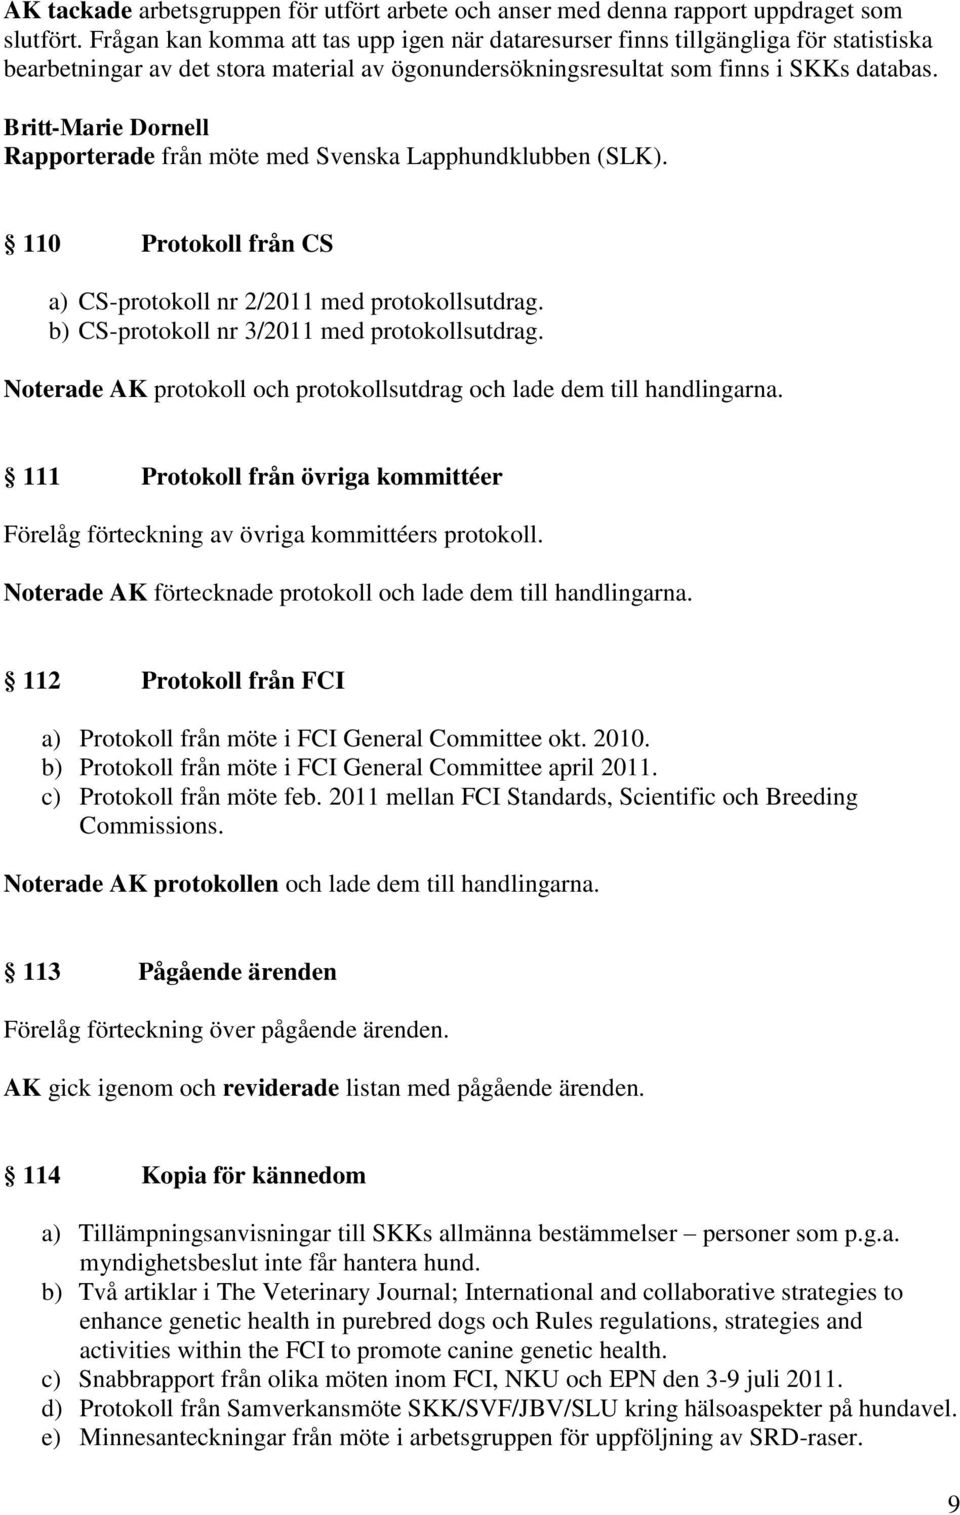 Britt-Marie Dornell Rapporterade från möte med Svenska Lapphundklubben (SLK). 110 Protokoll från CS a) CS-protokoll nr 2/2011 med protokollsutdrag. b) CS-protokoll nr 3/2011 med protokollsutdrag.